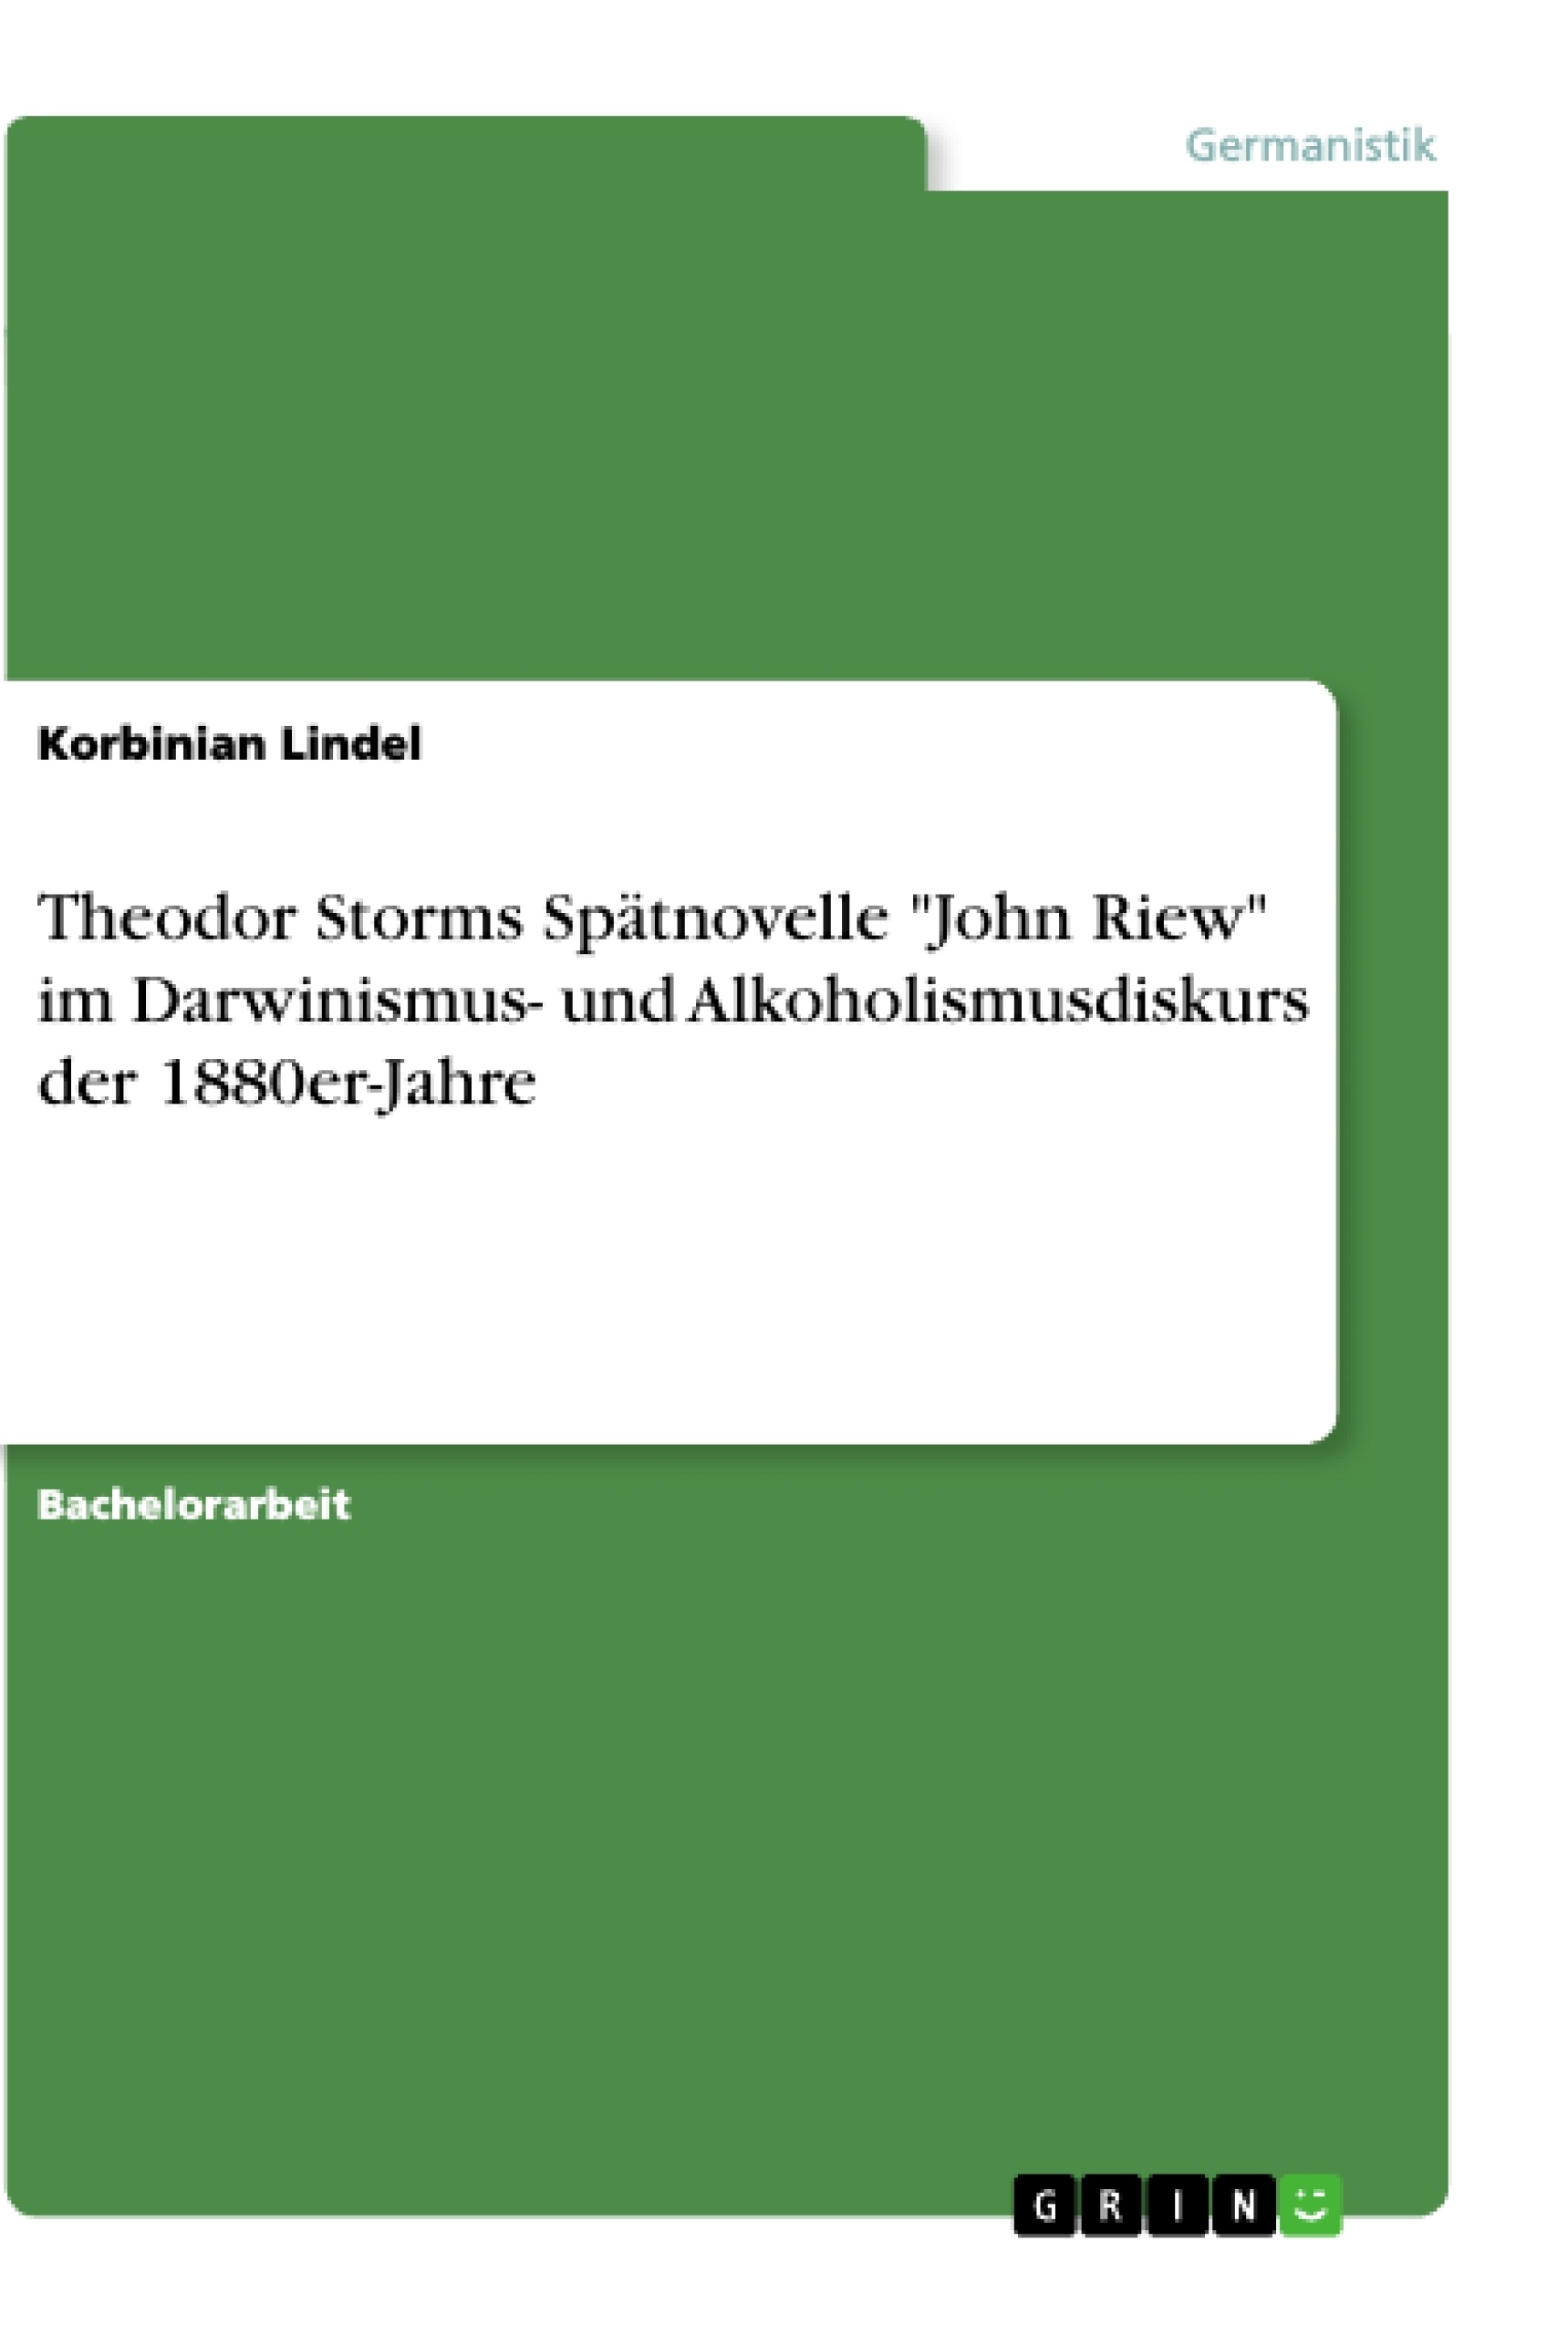 Titel: Theodor Storms Spätnovelle "John Riew" im Darwinismus- und Alkoholismusdiskurs der 1880er-Jahre